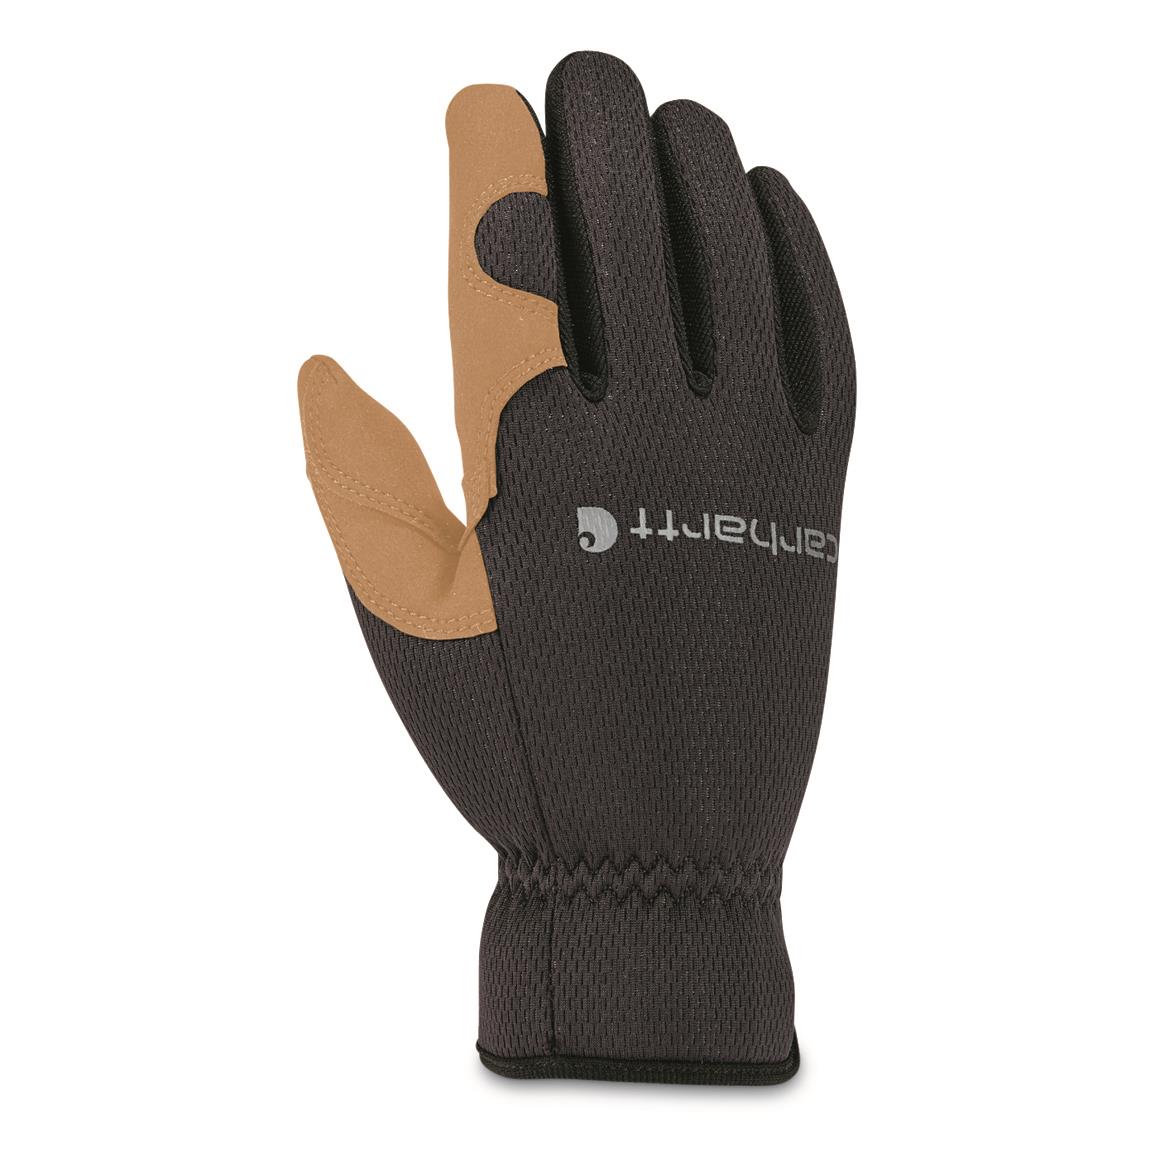 Carhartt Men's Open Cuff High Dexterity Gloves, Black Barley